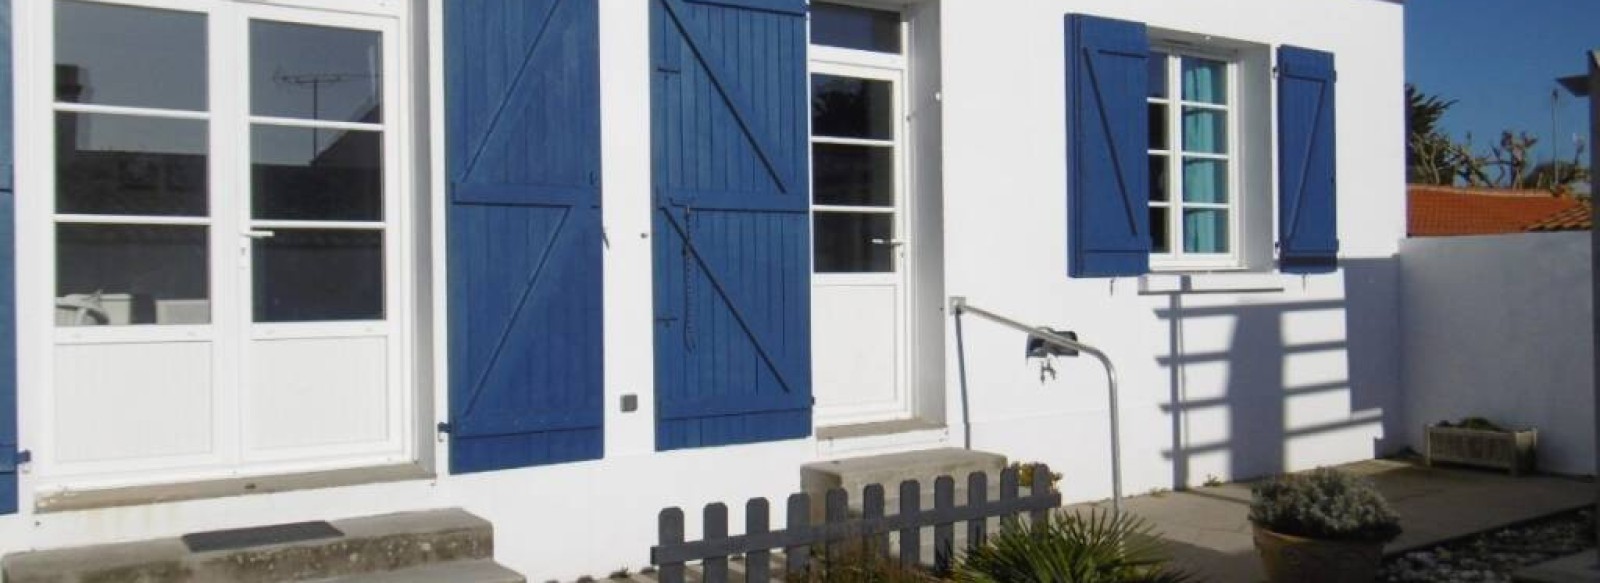 Maison de vacances a l'Herbaudiere sur l'ile de Noirmoutier